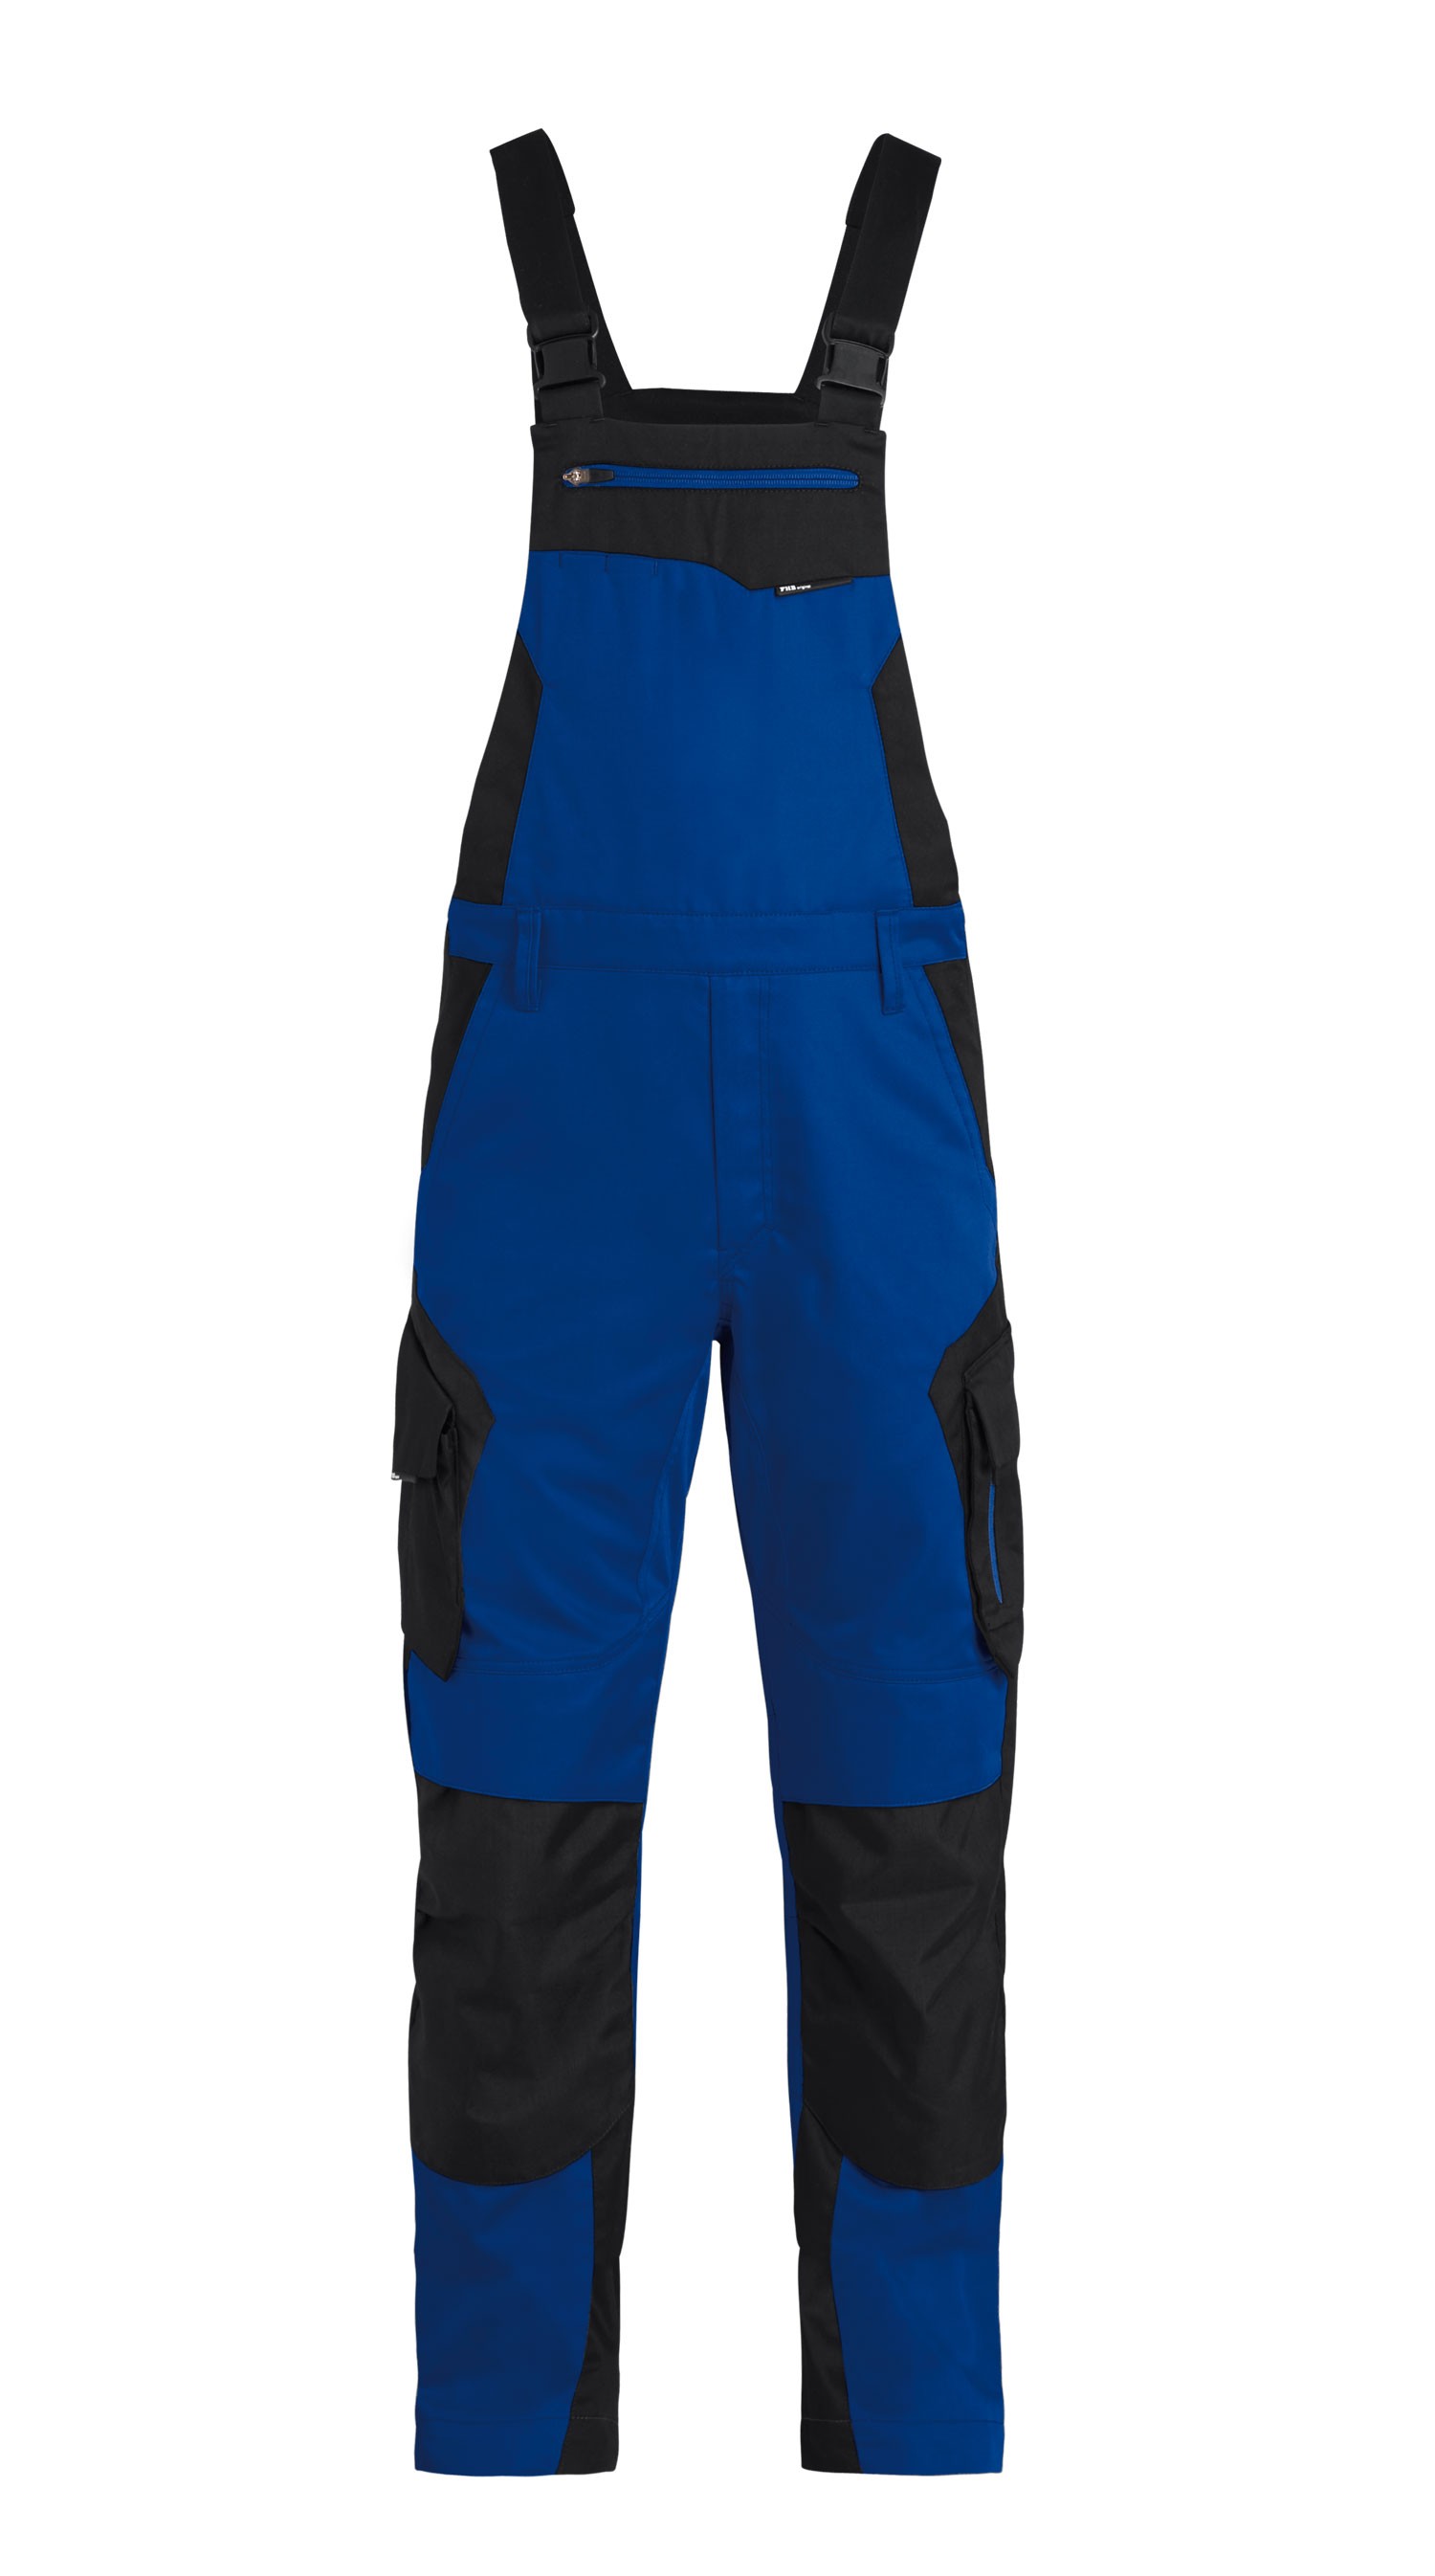 Pantalon de travail 100% COTON VERT - GRIS - ProtecNord : vêtements